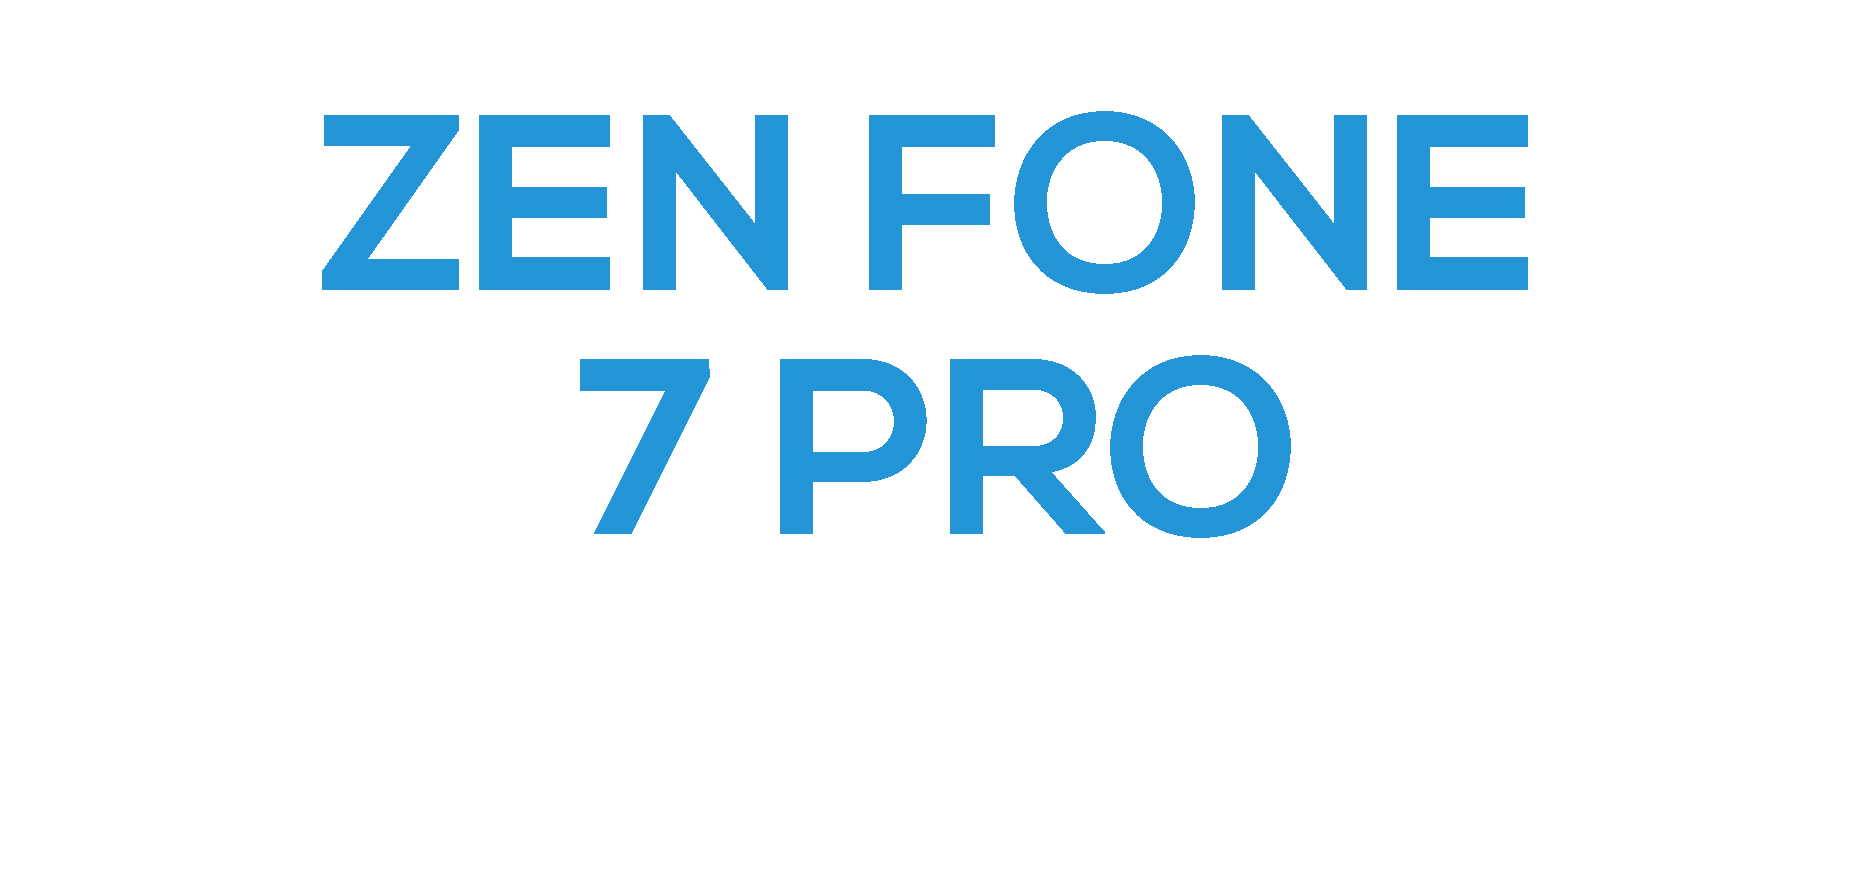 ZenFone 7 Pro